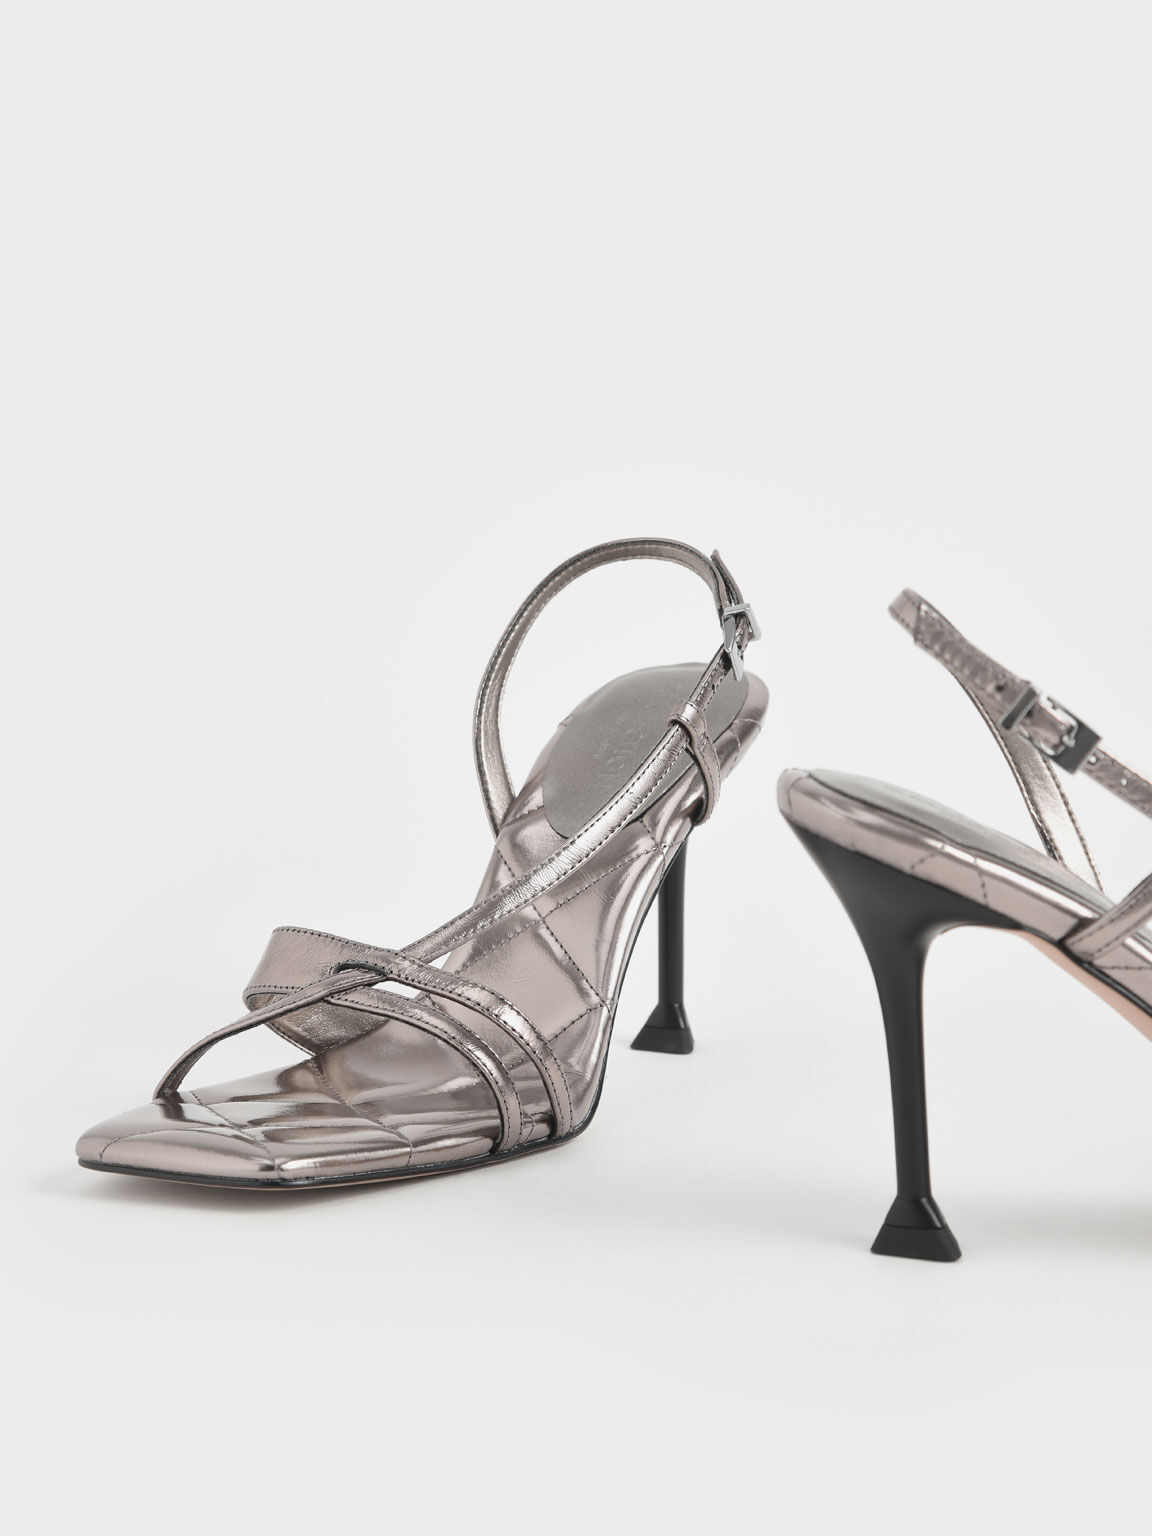 Sandal Wrinkled Leather Sculptural Heel, Silver, hi-res